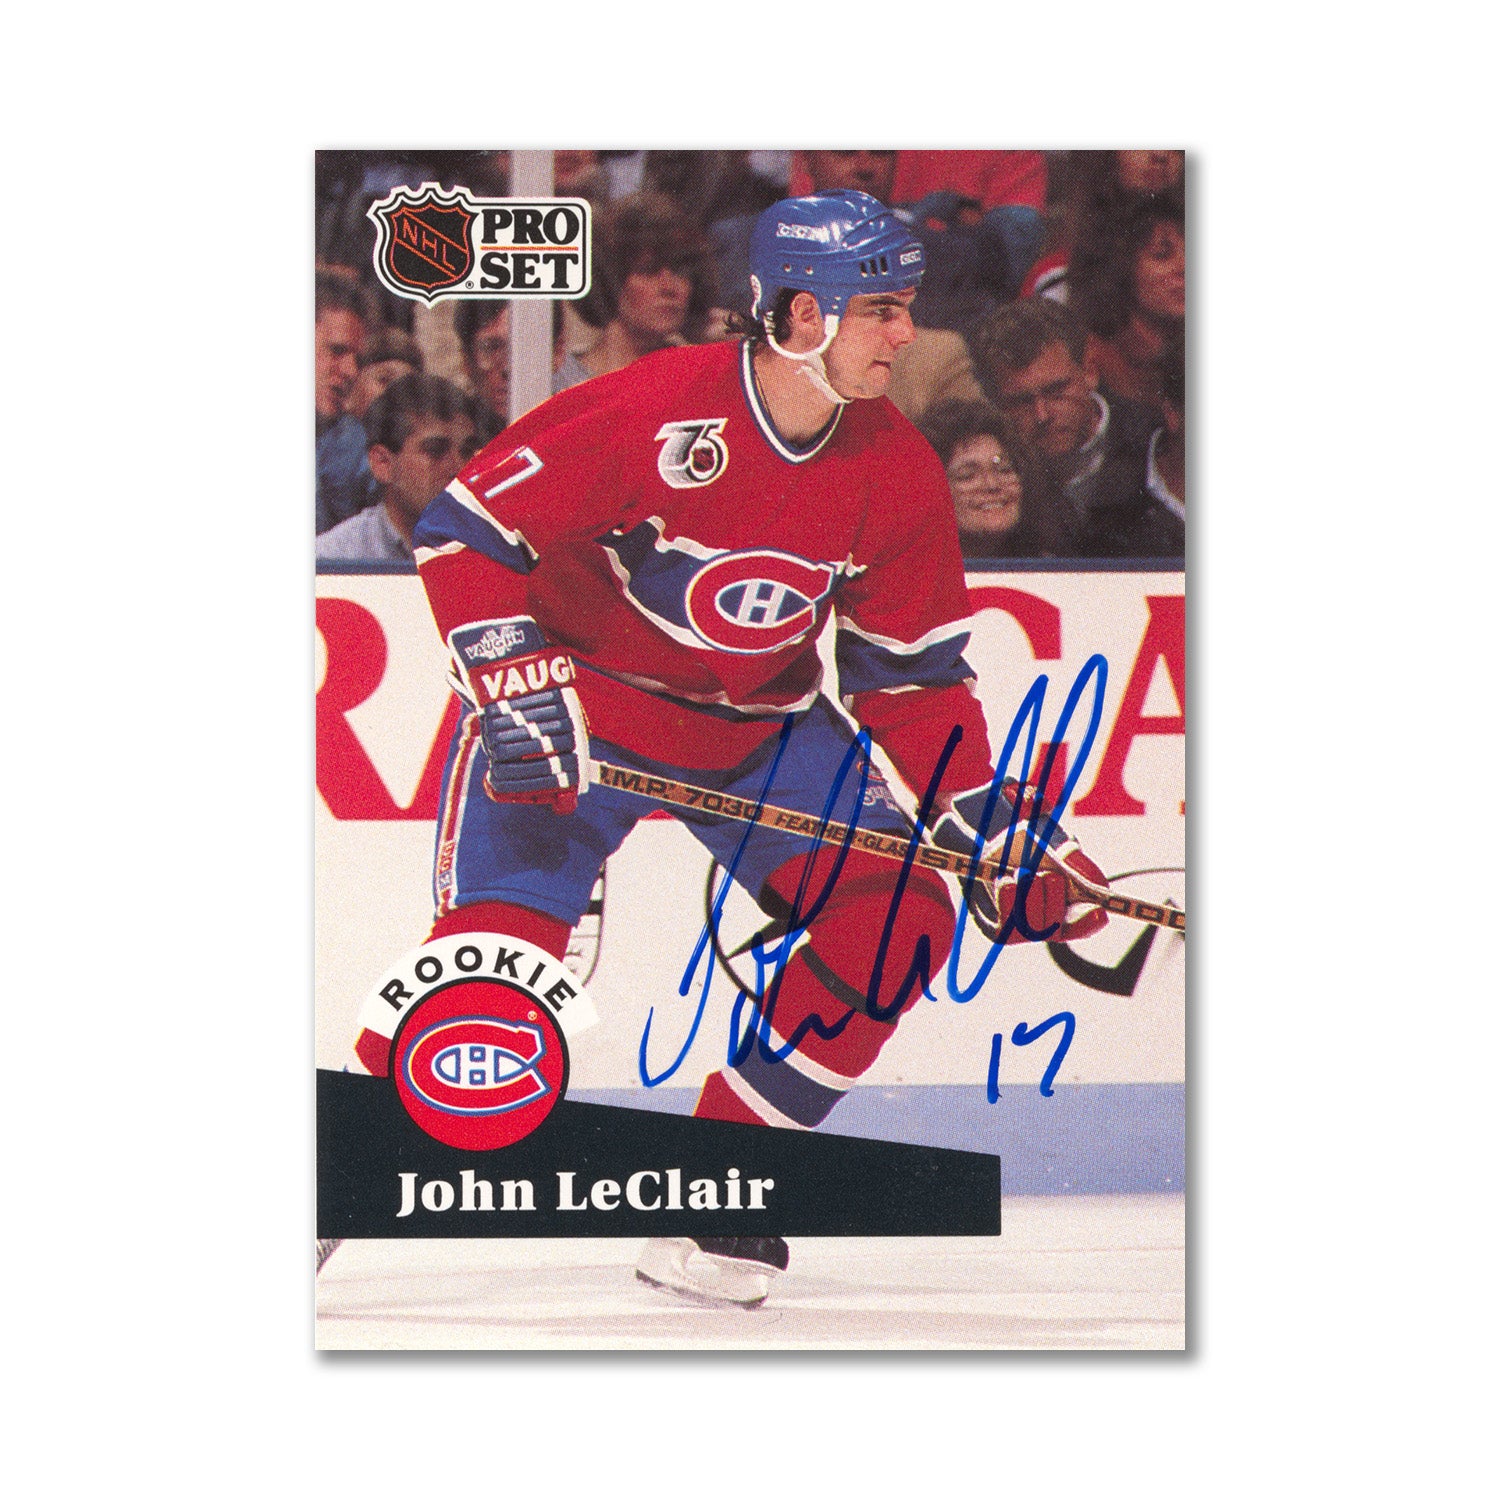 Autographed 1991-92 Pro Set #545 John LeClair Rookie Card